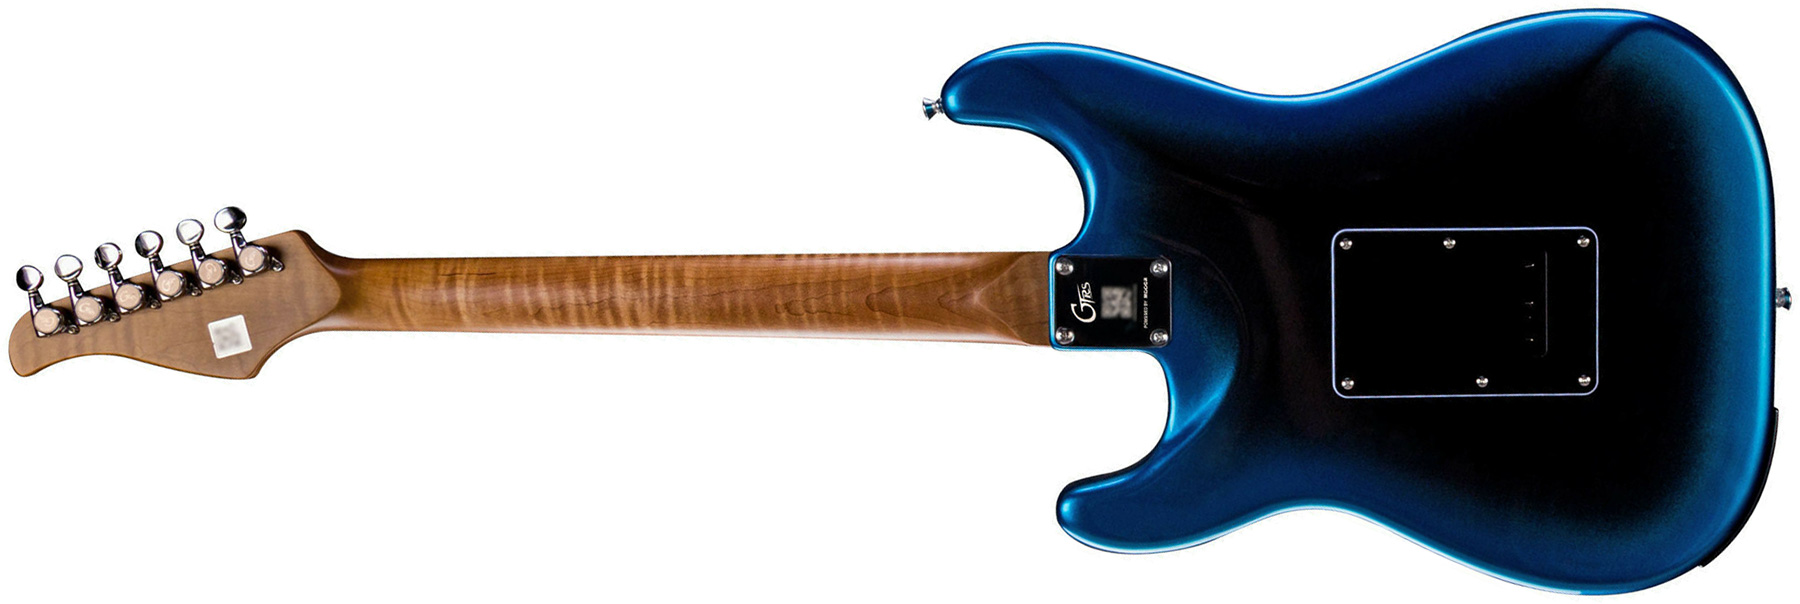 Mooer Gtrs P800 Pro Intelligent Guitar Hss Trem Rw - Dark Night - Modeling guitar - Variation 1